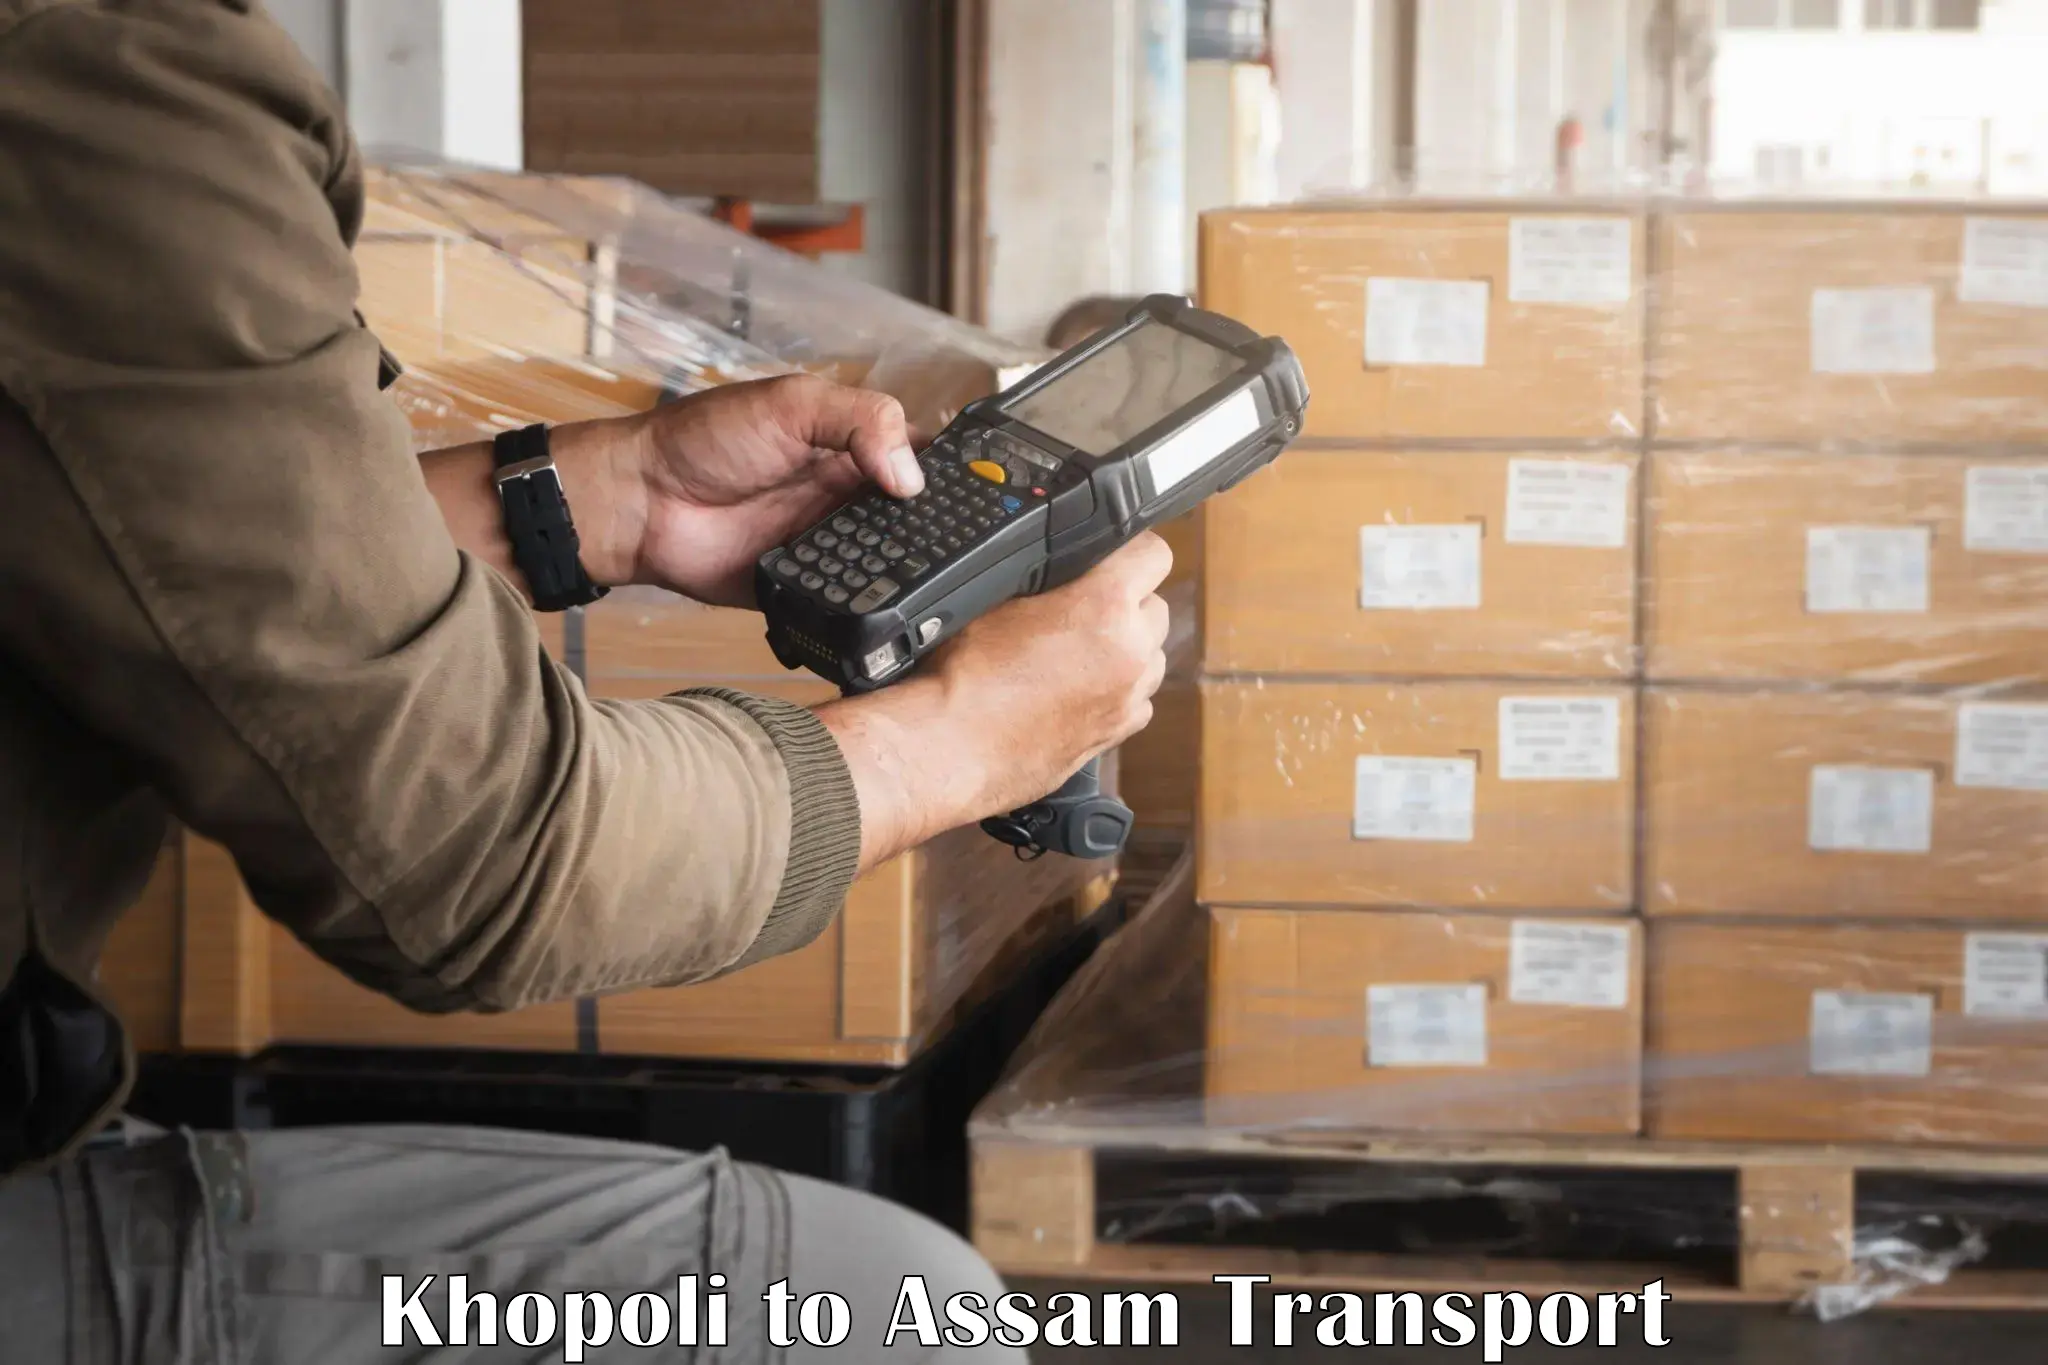 Two wheeler parcel service Khopoli to Sivasagar